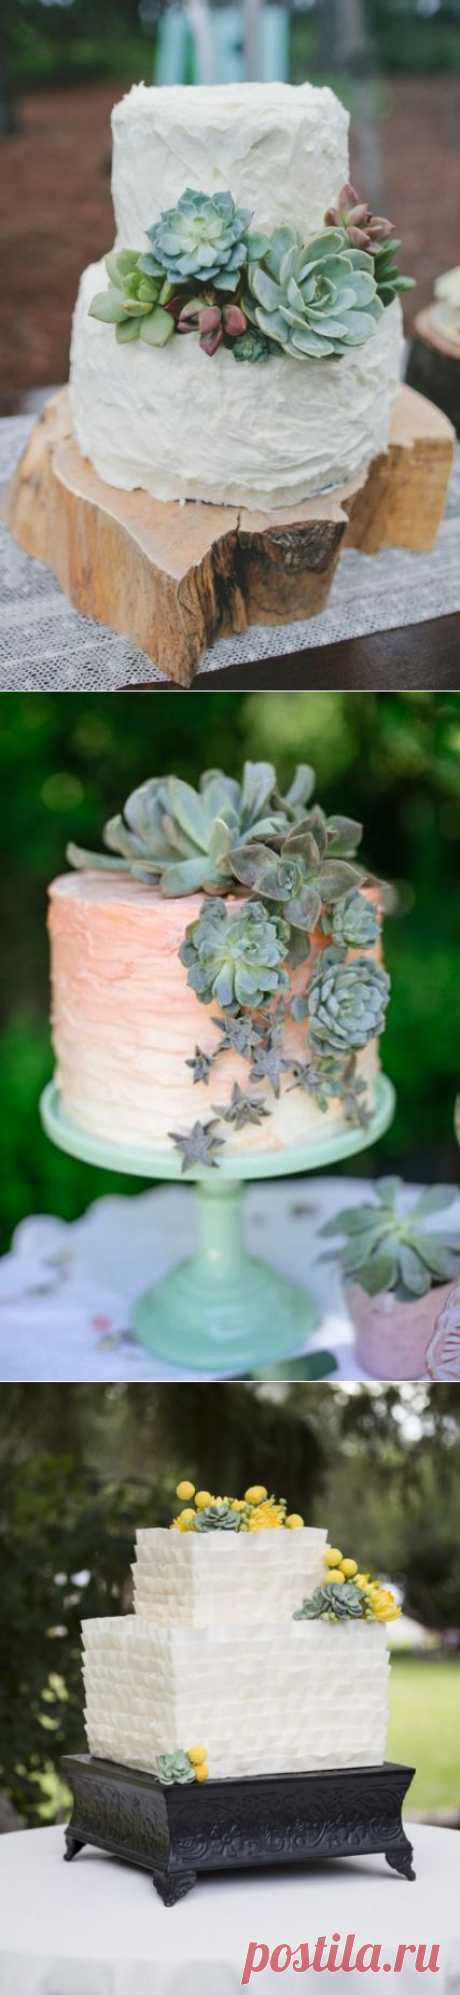 2015 Свадебный Trend: Свадебные торты, украшенные суккулентами